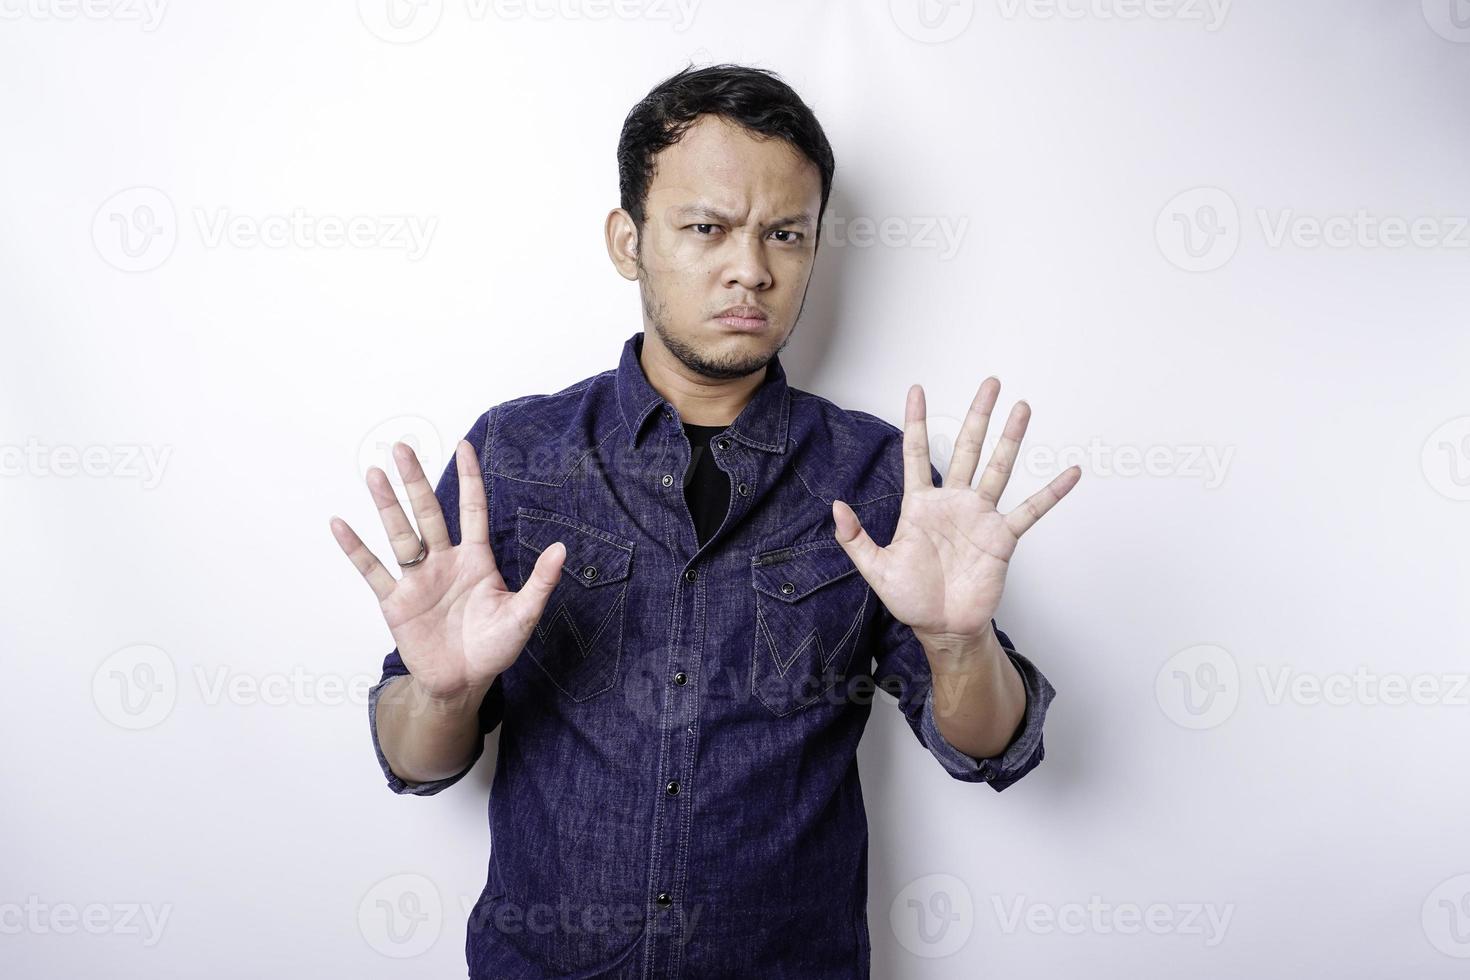 hombre asiático guapo con camisa azul con gesto de mano pose de parada o prohibición con espacio de copia foto